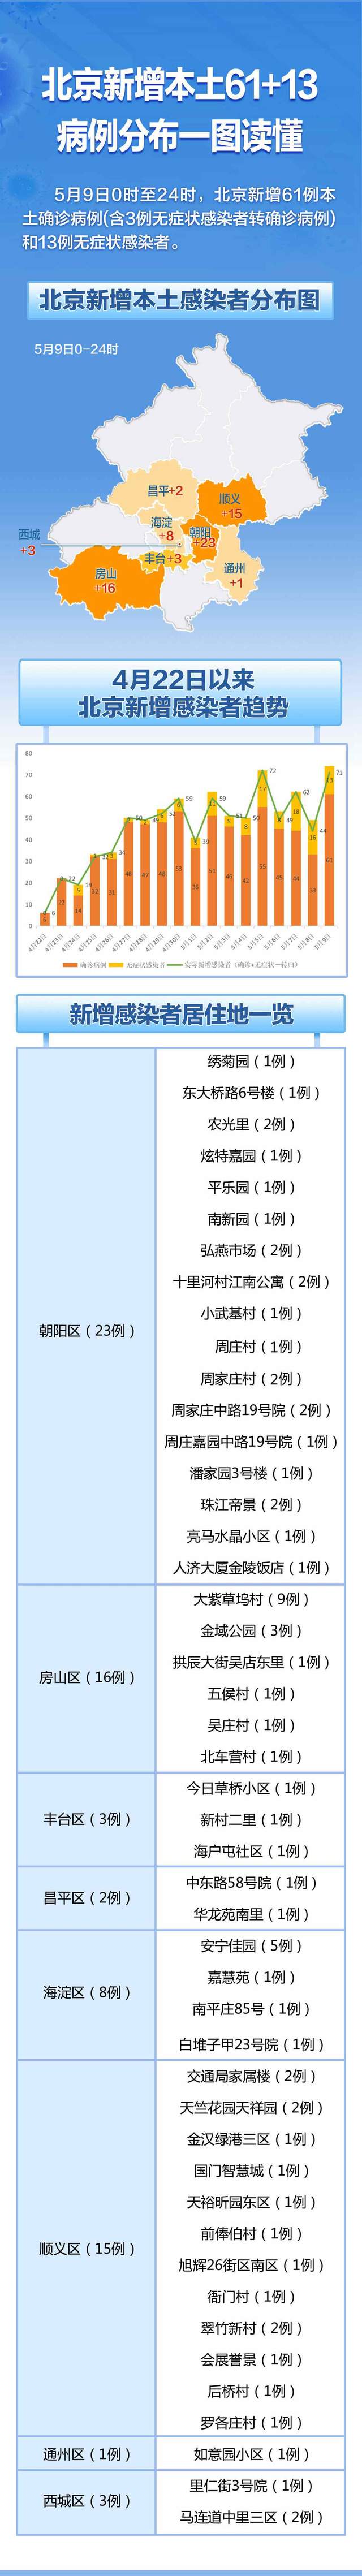 北京昨日新增本土61＋13，感染者分布和居住地一图看懂